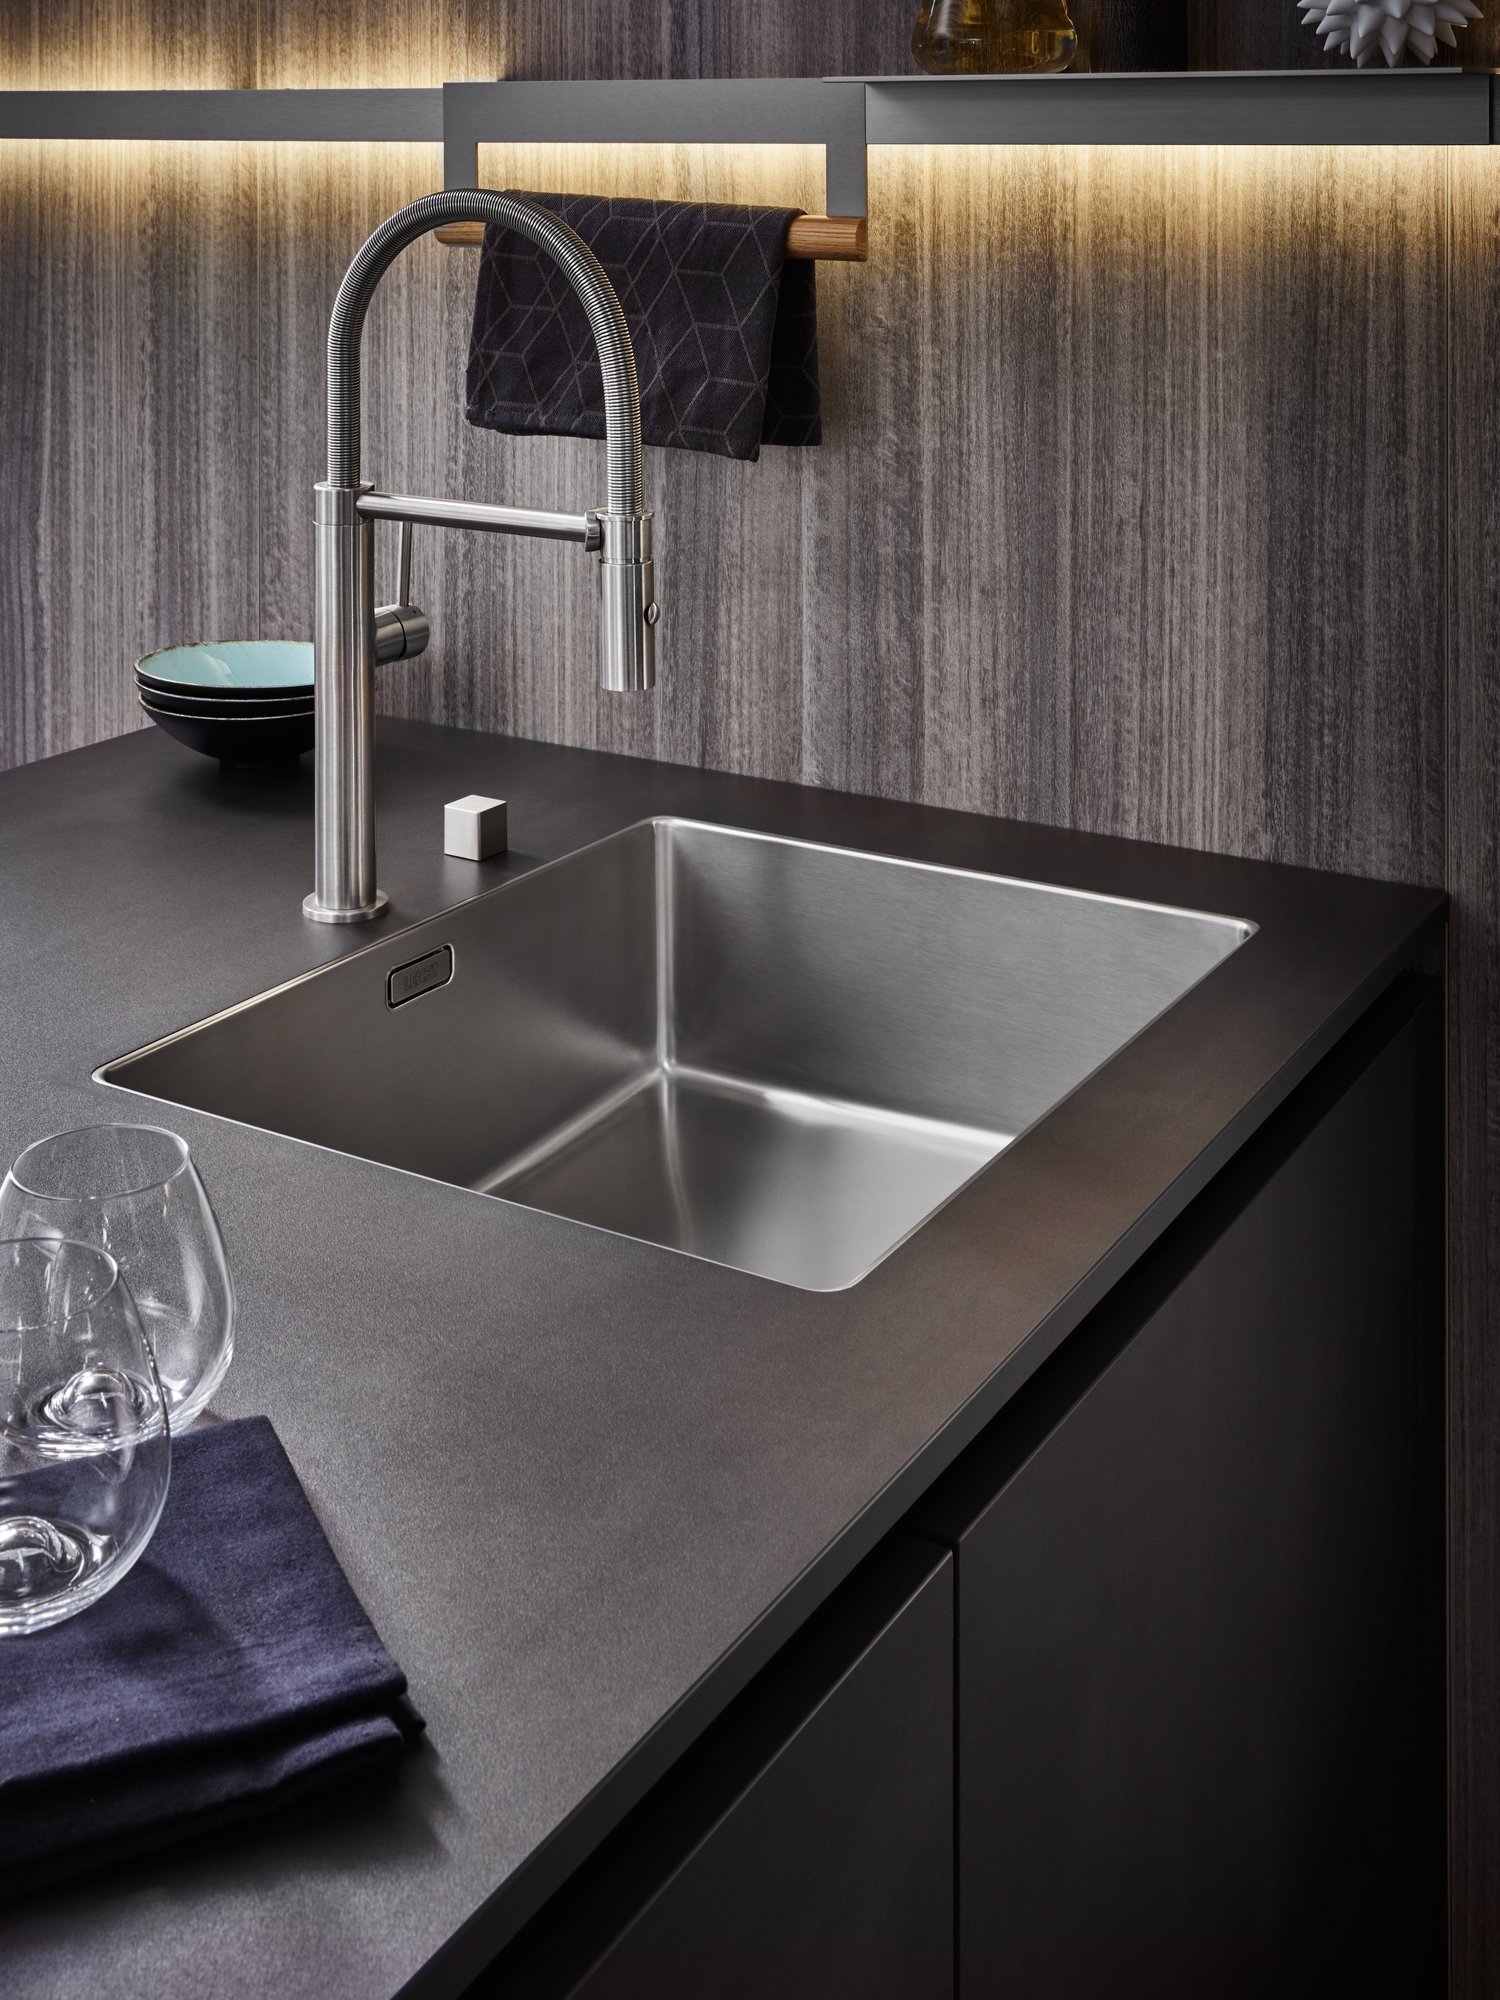 Leicht ORLANDO  MINERA  MINERA-C Connaught Kitchens 5 stainless steel sink.jpg